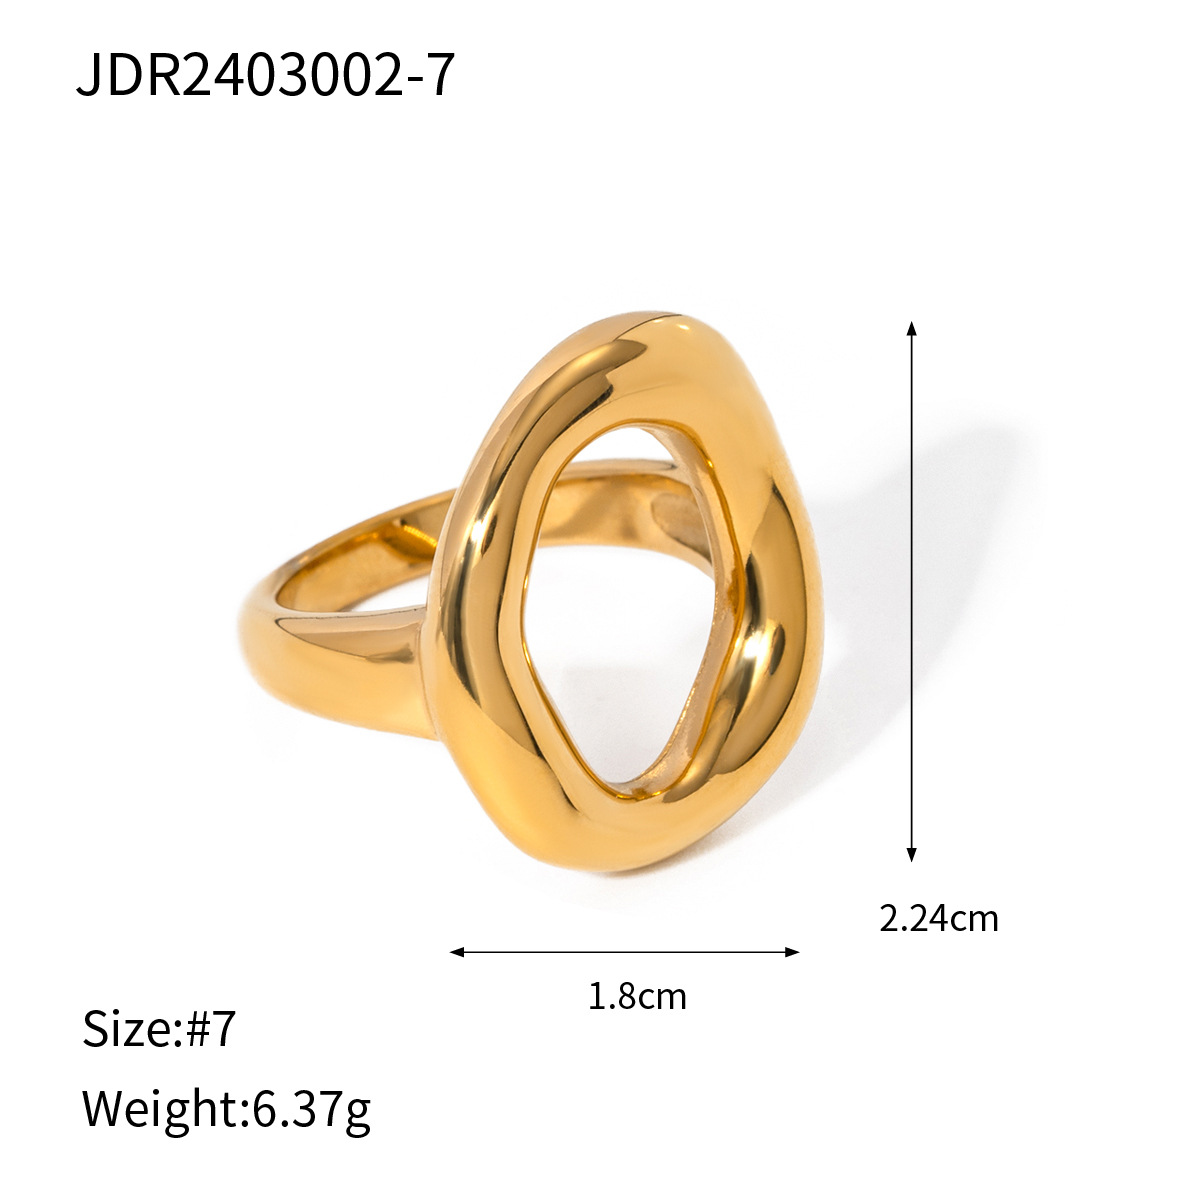 JDR2403002-7 size